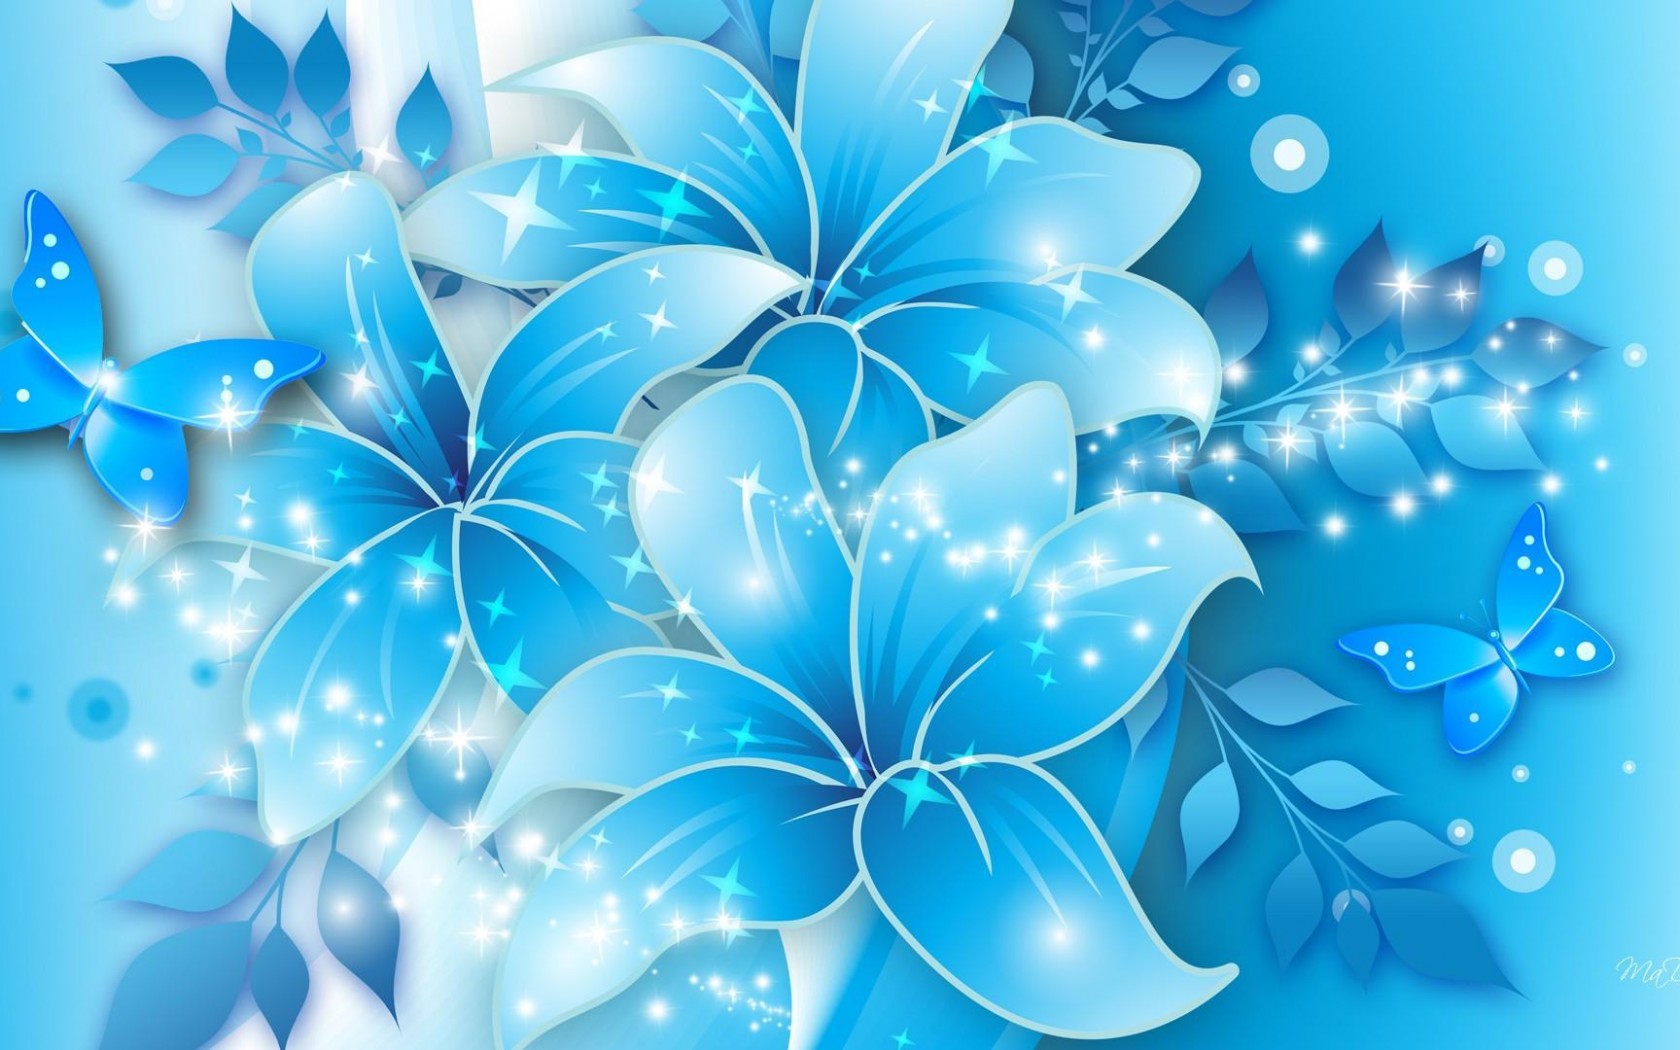 Blue Butterflies And Flowers , HD Wallpaper & Backgrounds